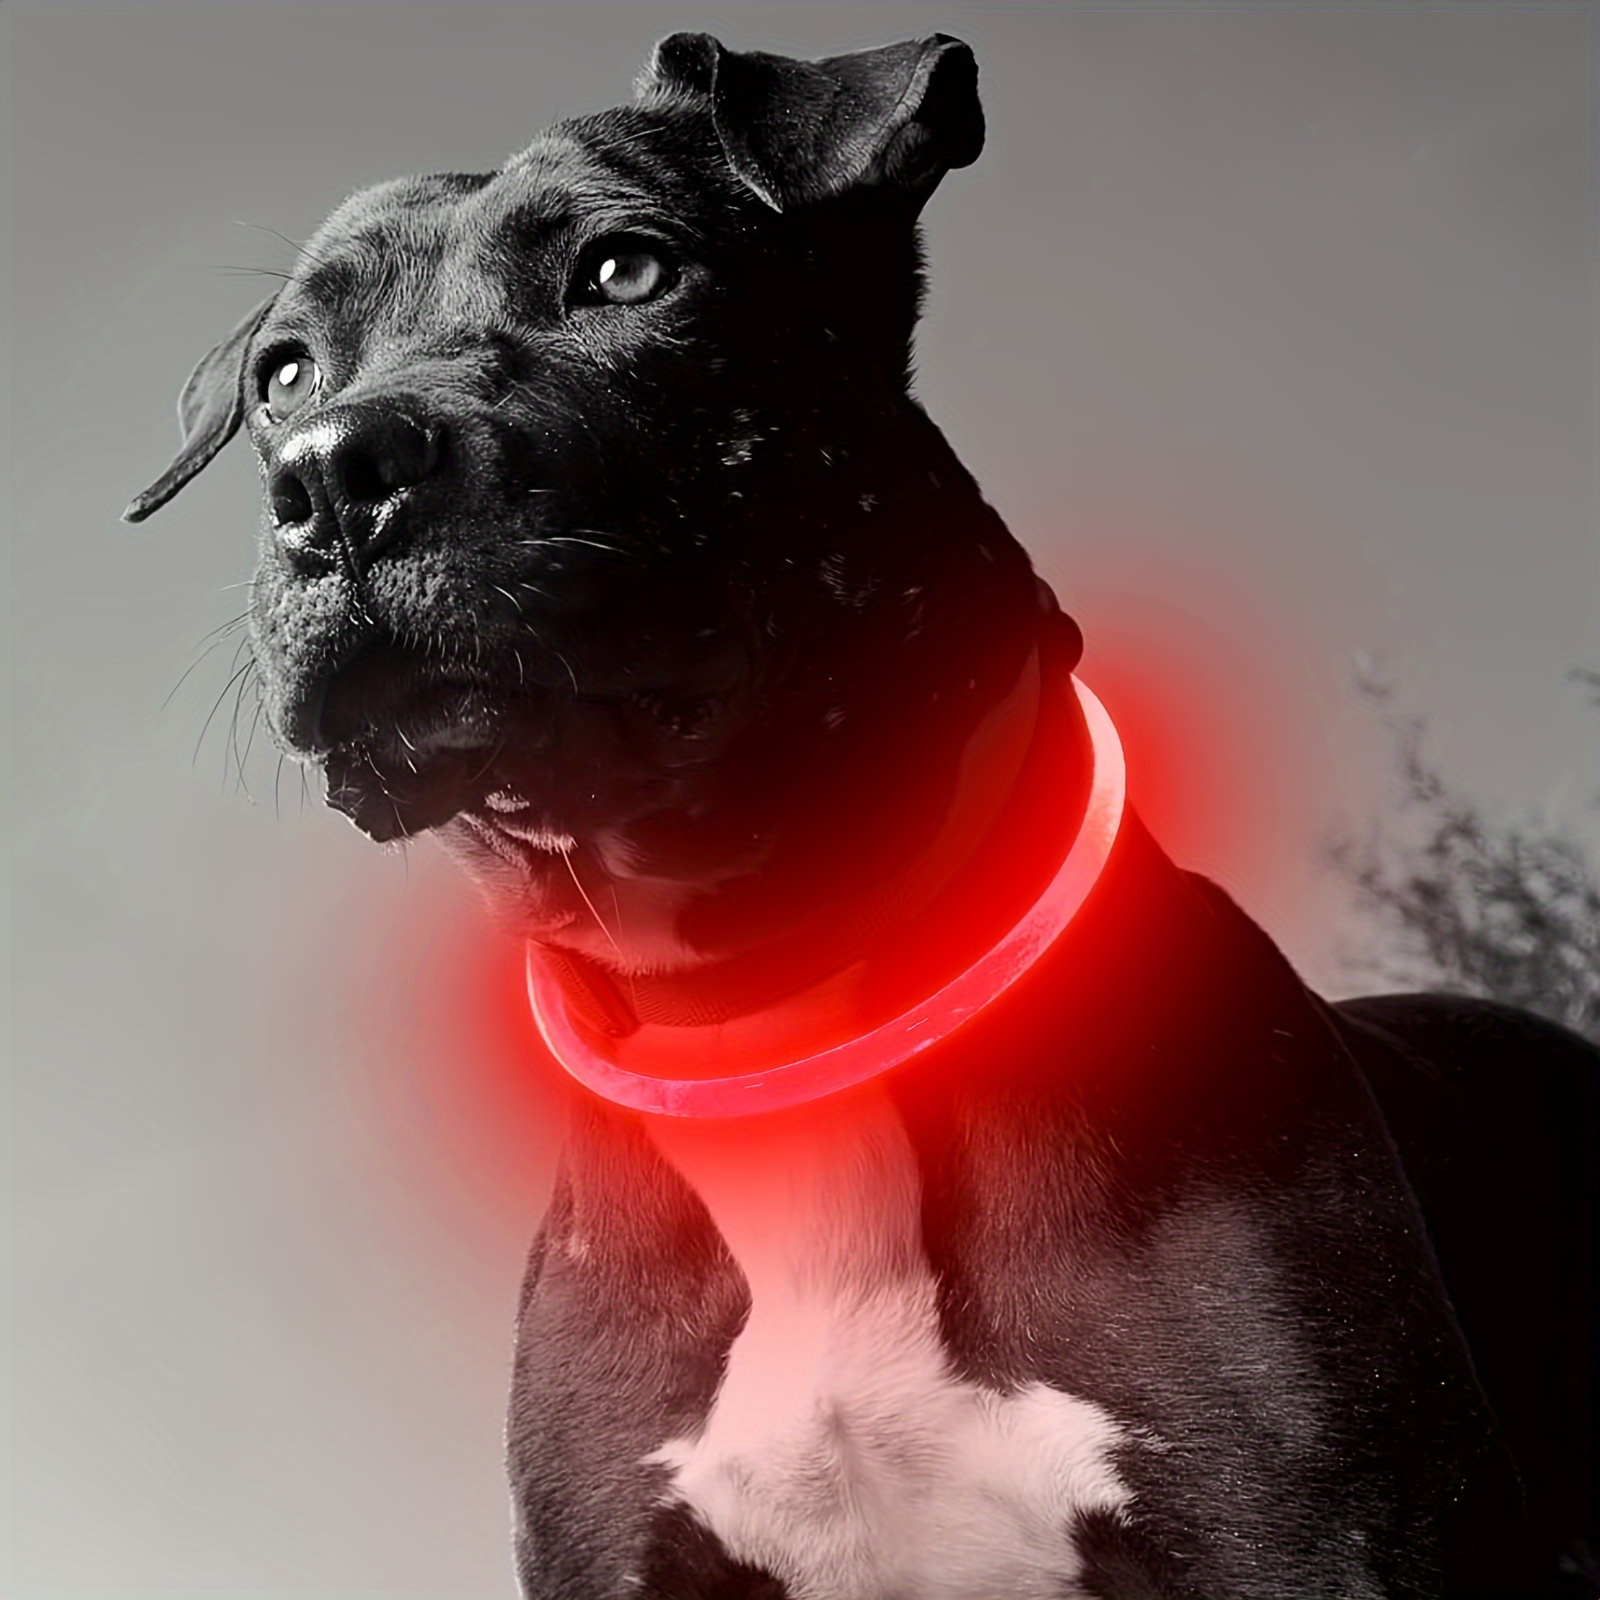  ZOETOOL 2 luces para perro para caminar por la noche, luz LED  con clip para collar de perro, correa de arnés recargable, impermeable,  banda de silicona, linterna de seguridad, lámpara LED